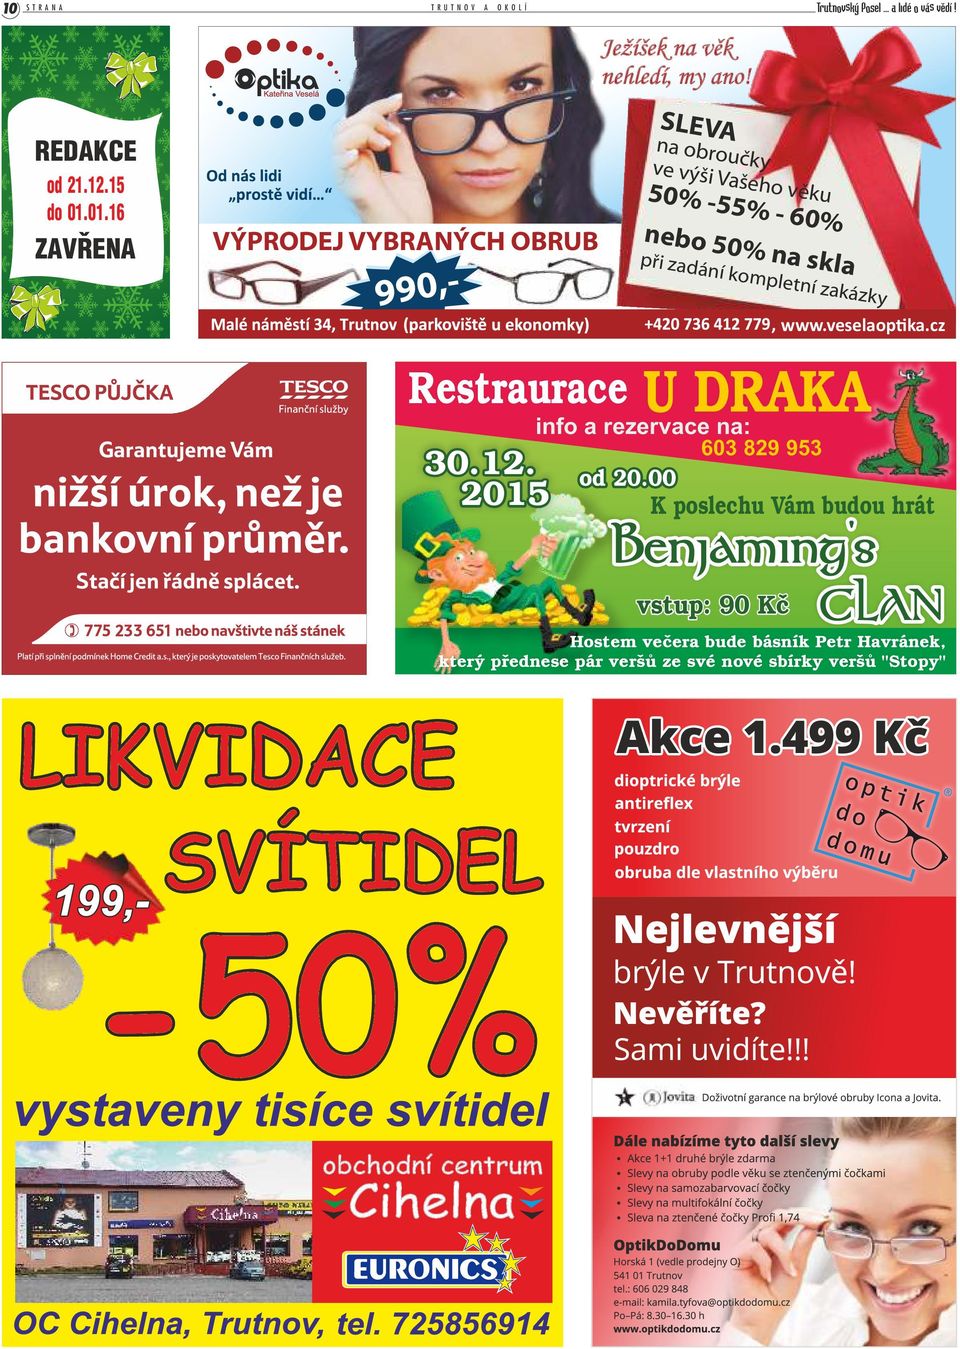 zadání kompletní zakázky www.veselaop ka.cz 1 Restraurace U DRAKA info a rezervace na: 30.12. 2015 603 829 953 od 20.